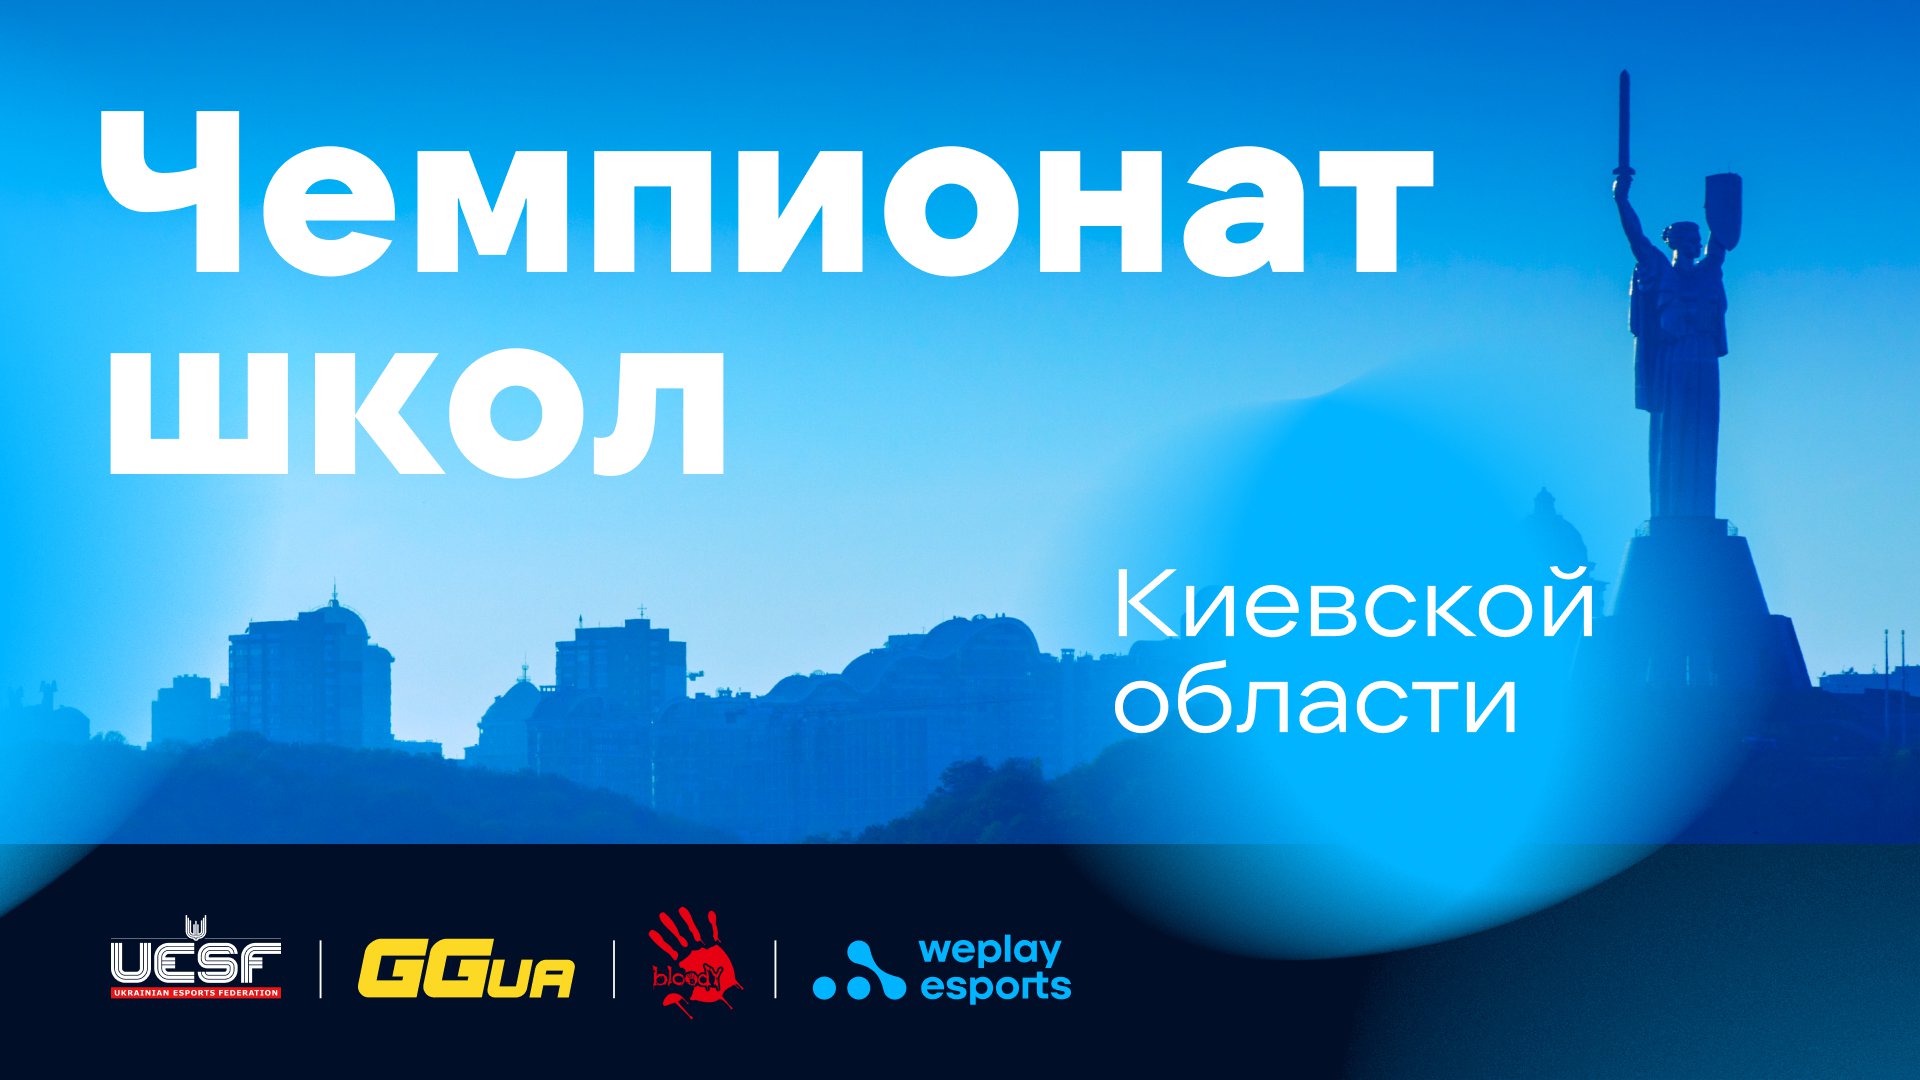 В Киевской области прошел киберспортивный чемпионат среди школьников в дисциплинах CS:GO и Brawl Stars. Изображение: WePlay Holding